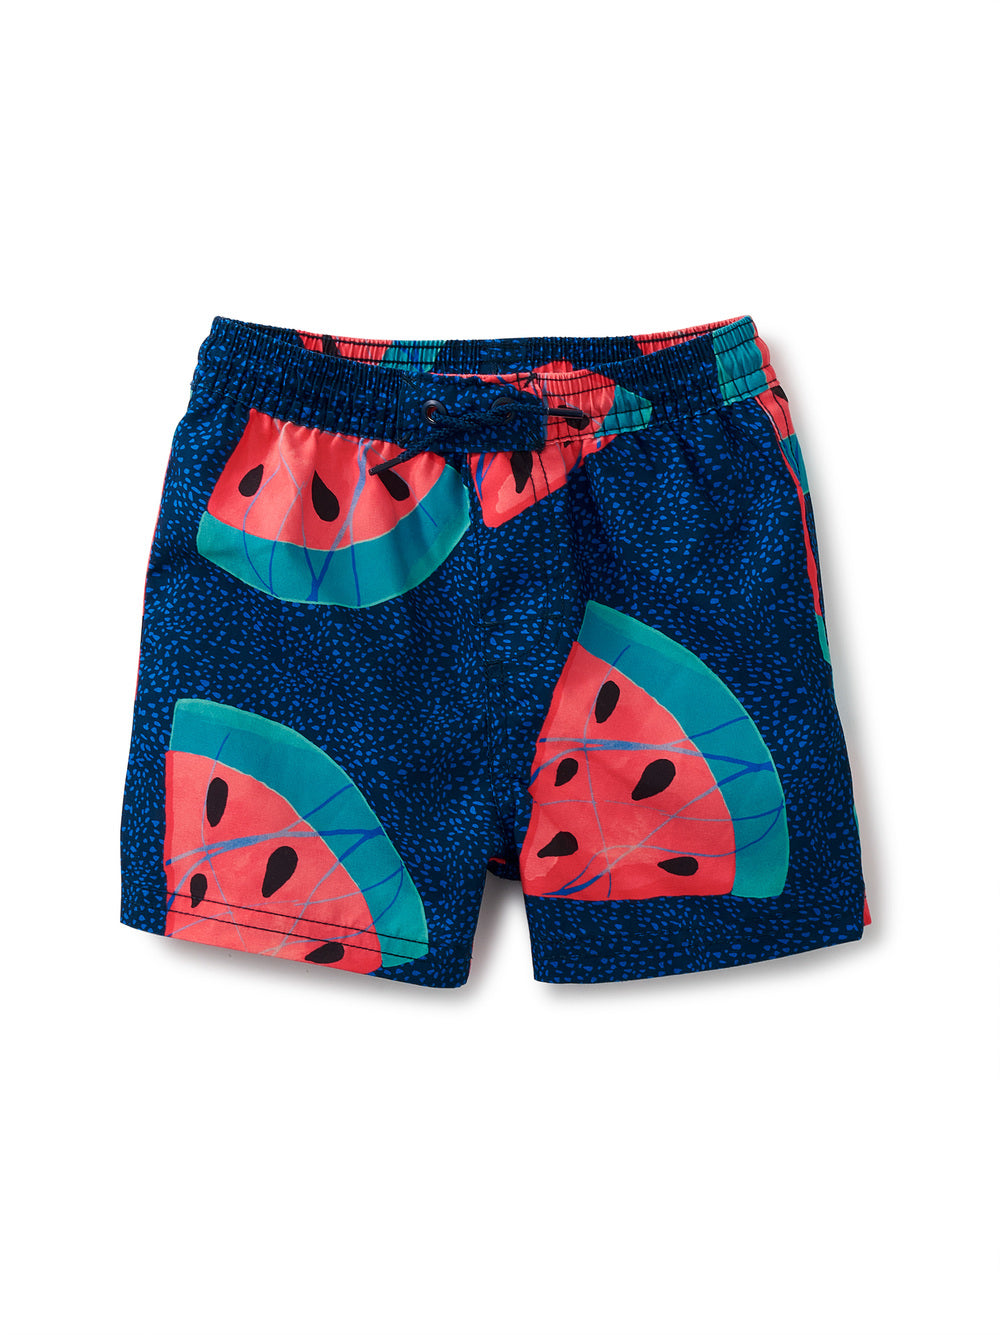 Watermelon Baby Swim Trunks